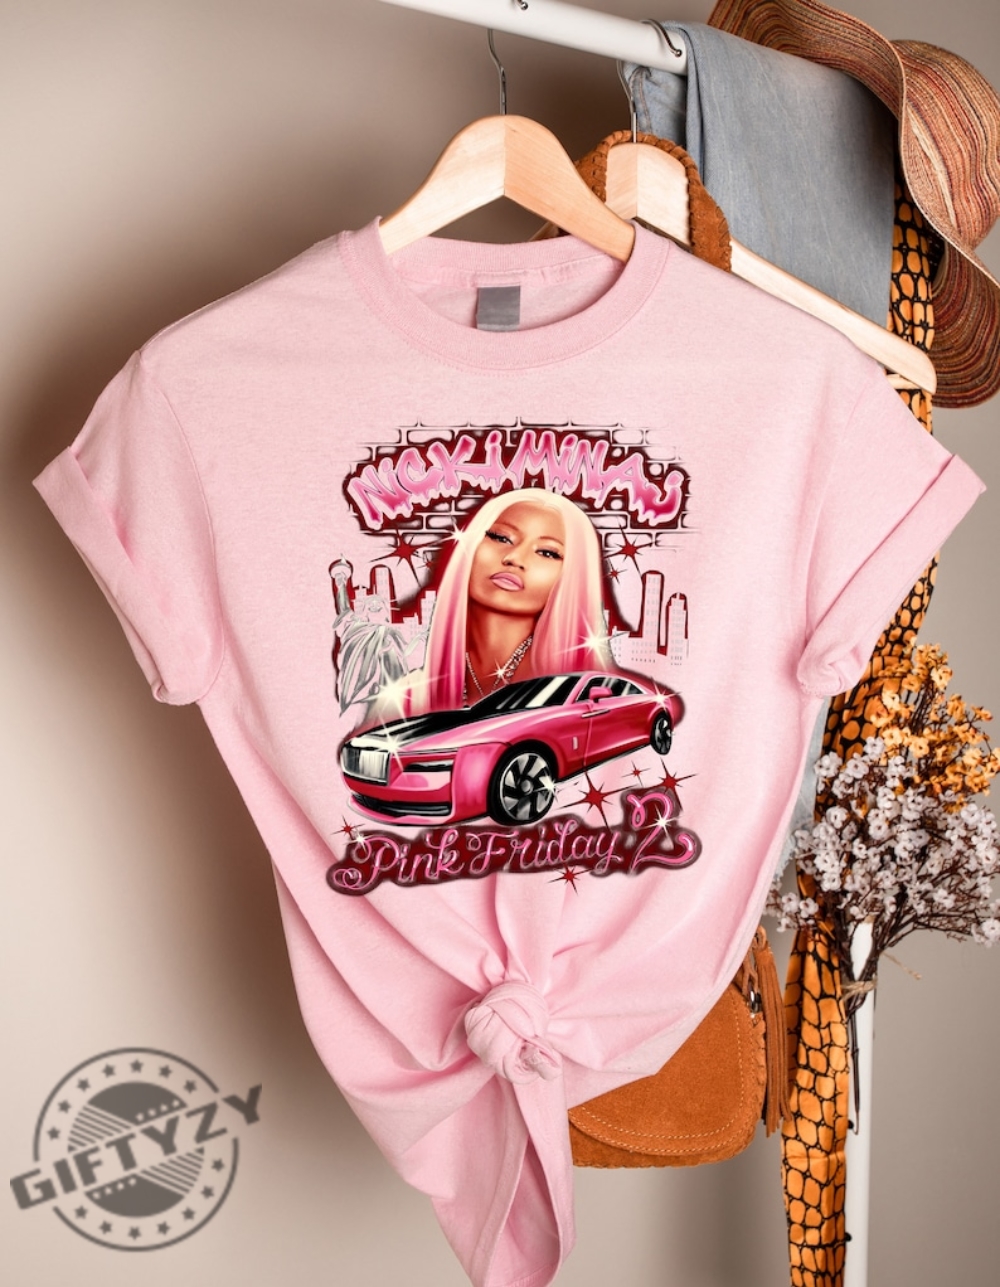 Nicki Minaj Shirt Nicki Minaj Vintage Sweatshirt Pink Friday 2 Airbrush Nicki Minaj Hoodie Unisex Tshirt Nicki Minaj Funny Shirt